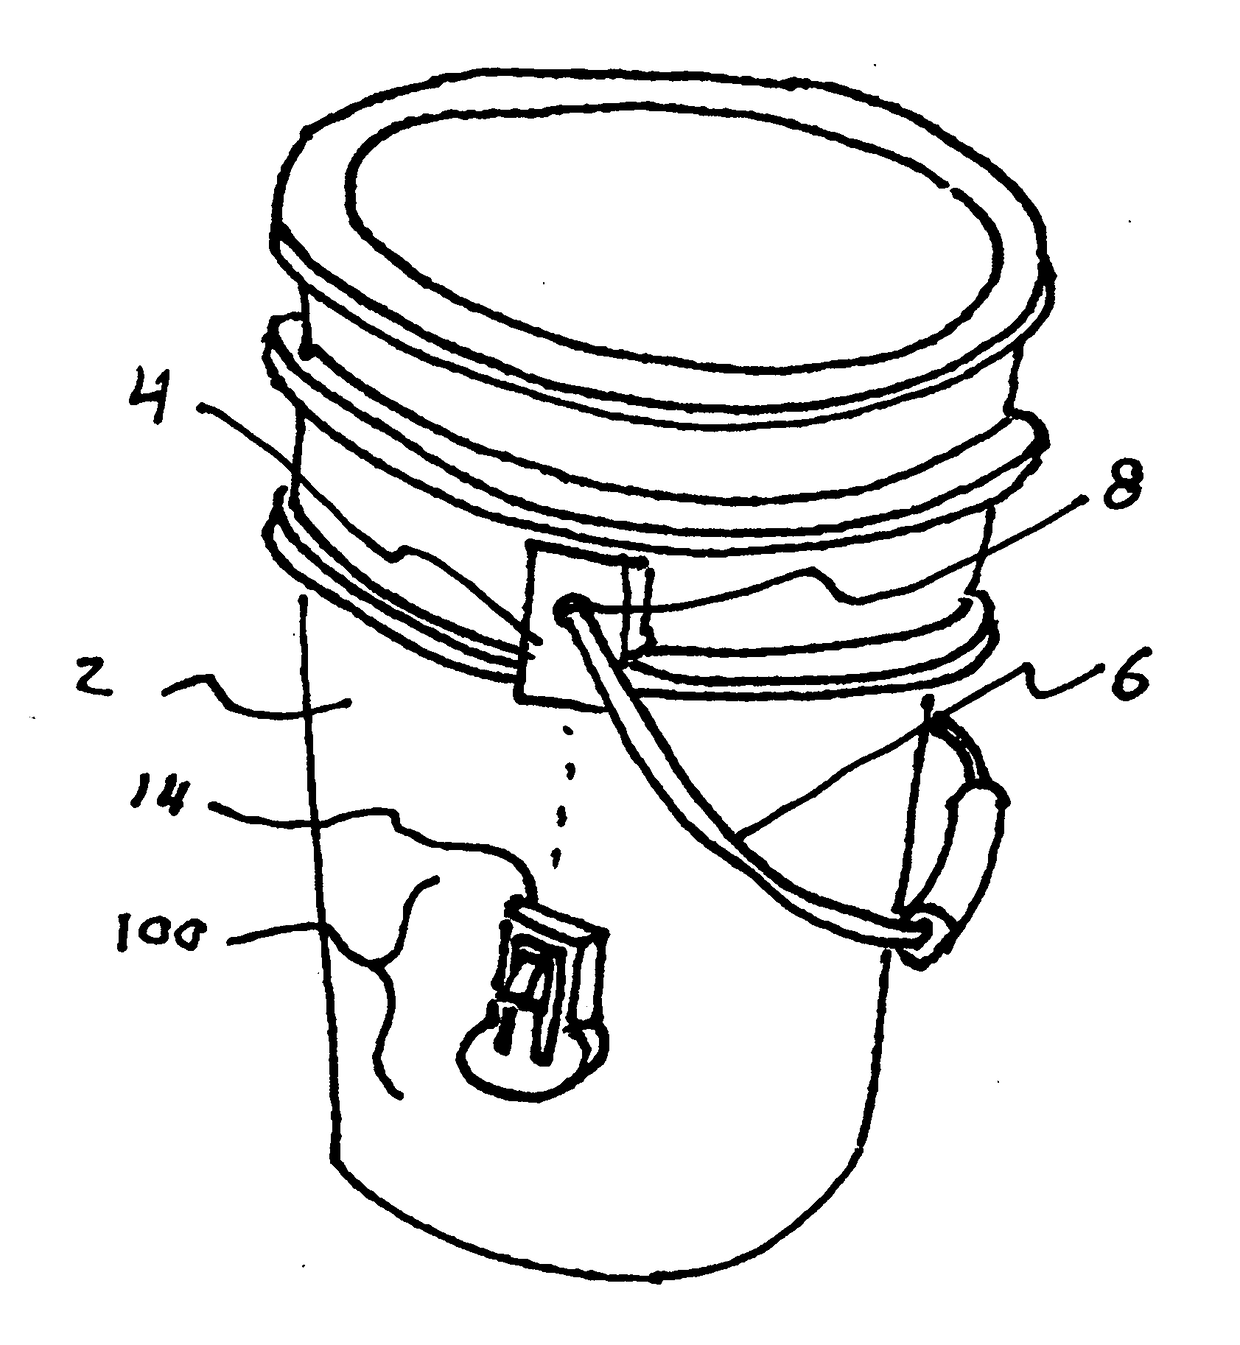 Bucket handle retainer